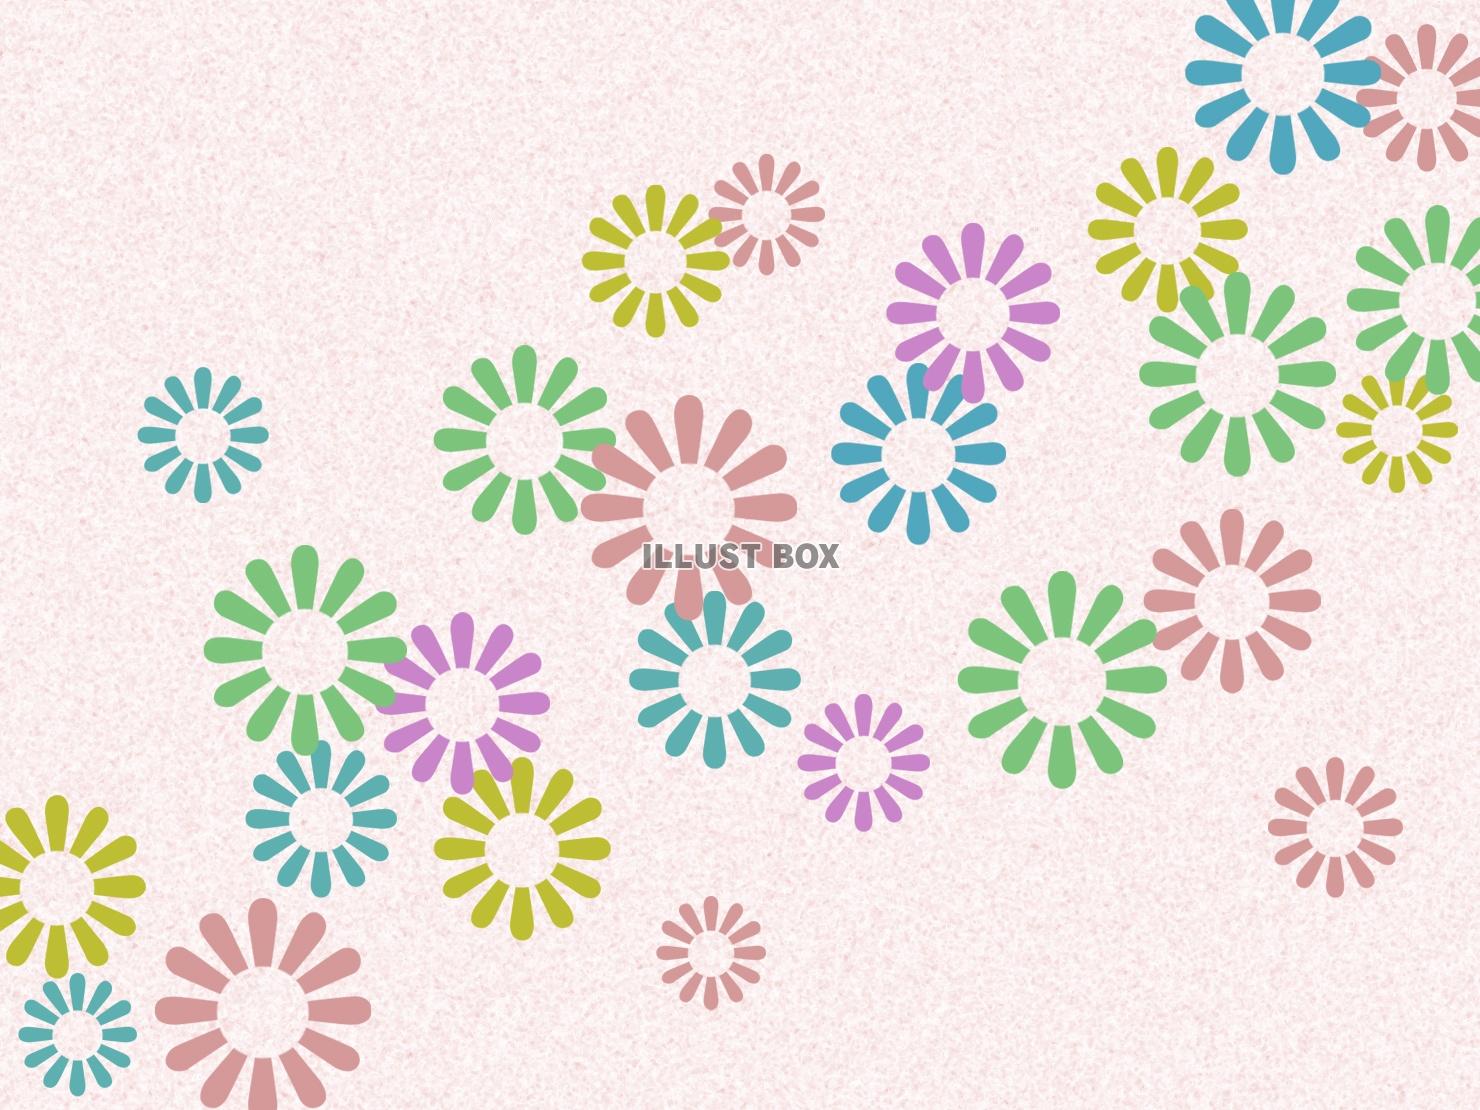 無料イラスト 花模様の壁紙カラフル柄の背景イラスト素材